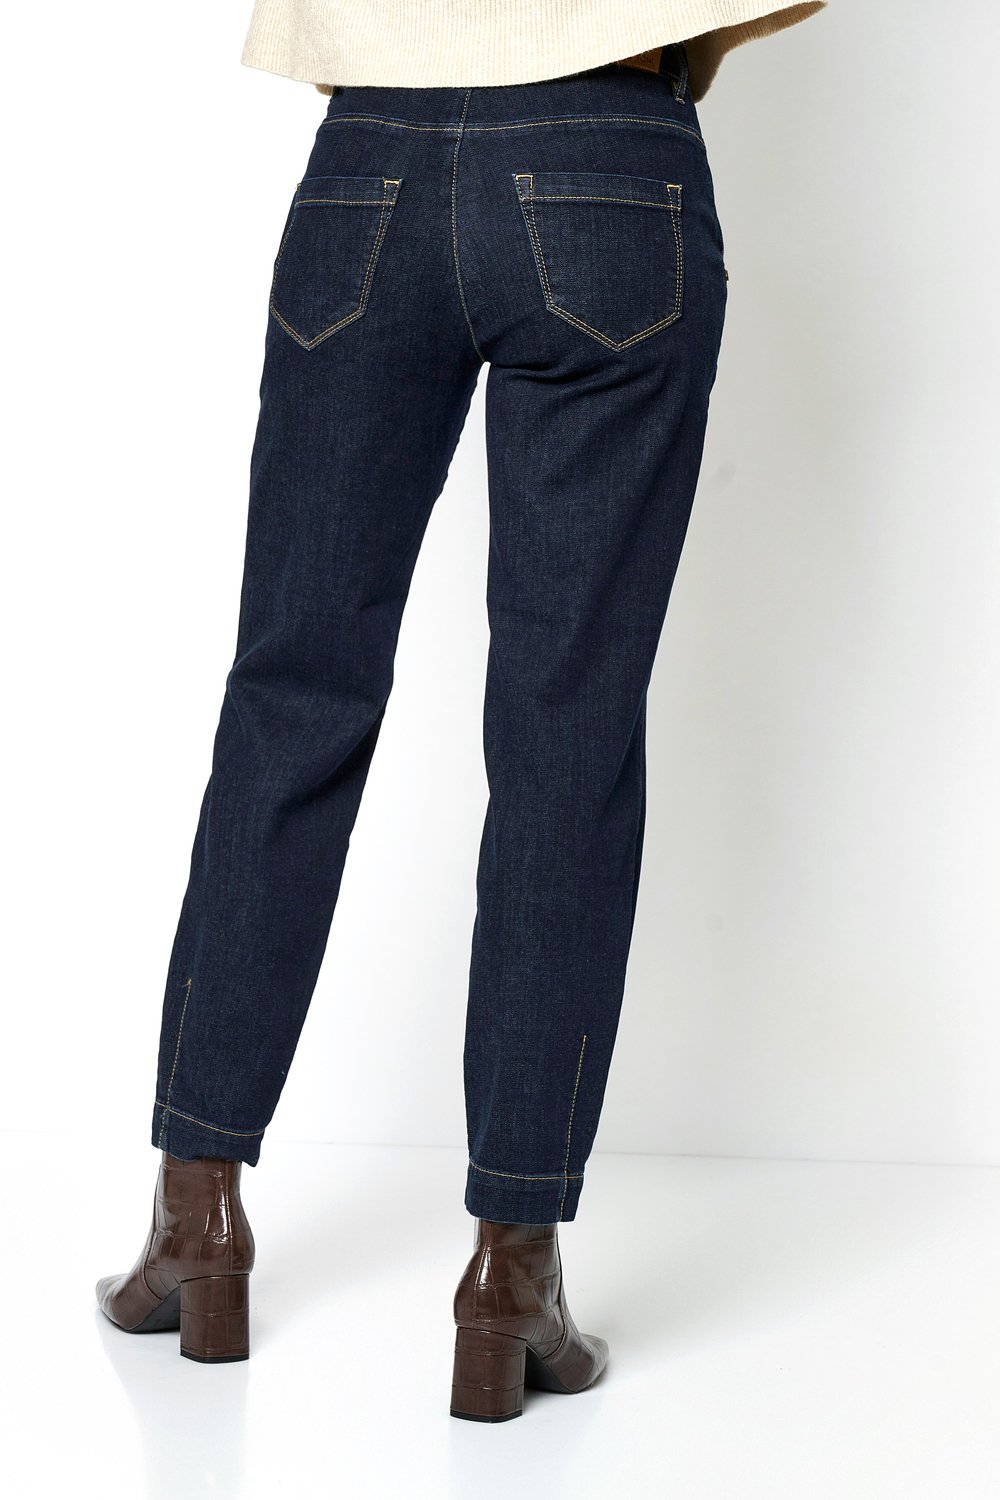 Damen-Jeans "Liv Carrot Ankle" mit Zierknöpfen aus Super Soft Denim